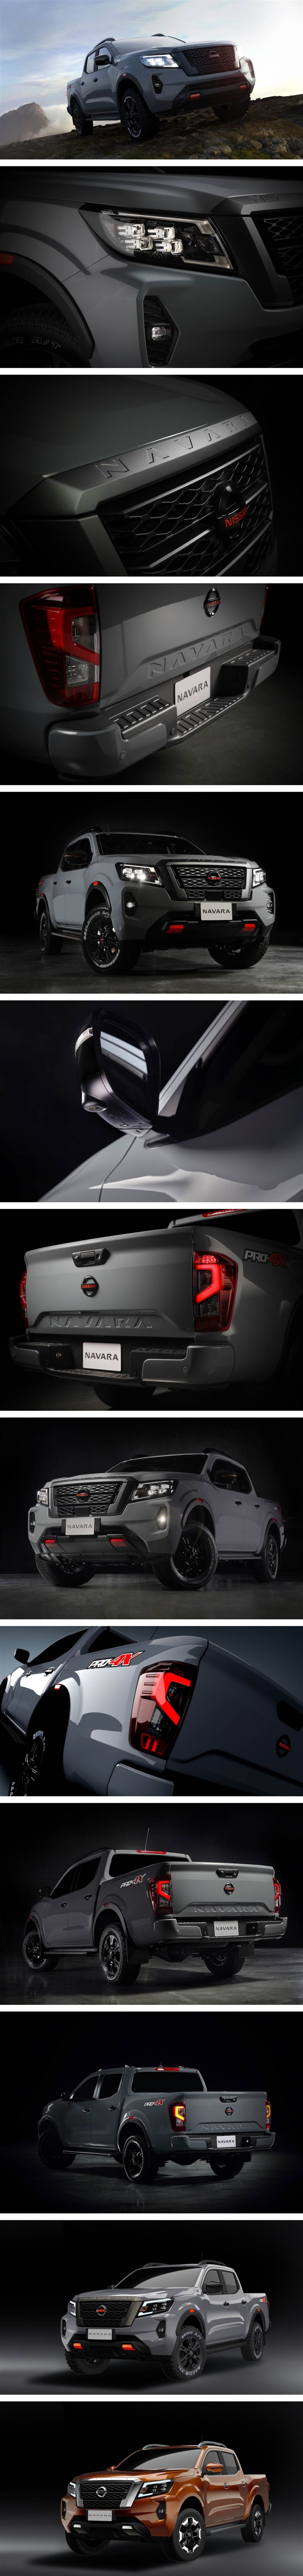 導入 NIM 先進技術、新增 PRO-4X 規格， Nissan Navara 小改款亮相！